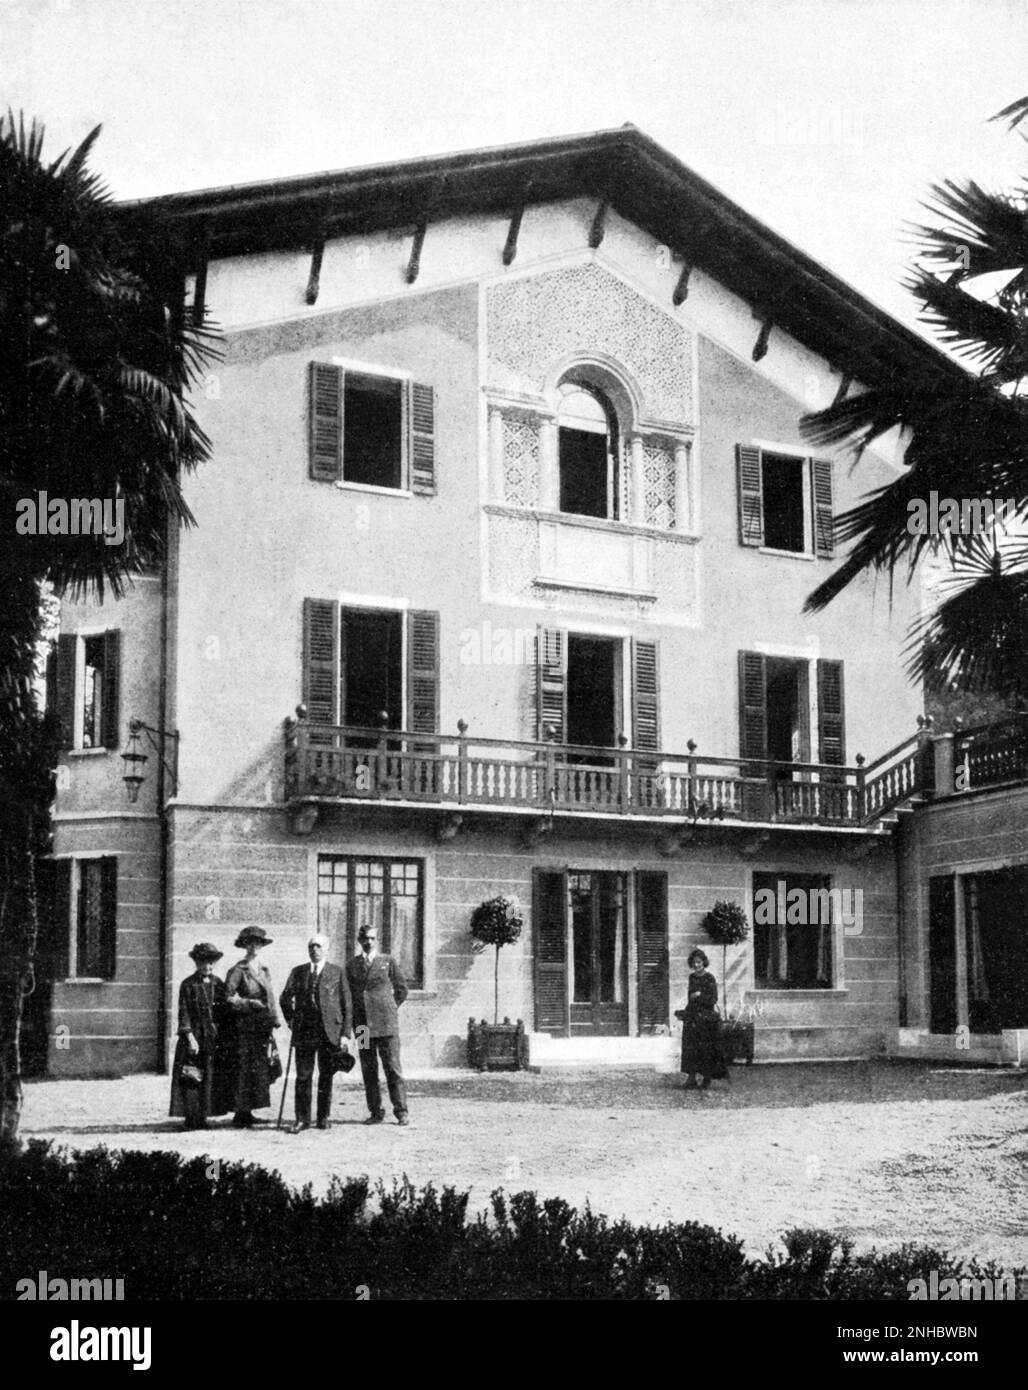 1924 , Etats-Unis : Luigi CADORNA ( 1850 - 1928 ) le Maresciallo d'Italia , capo di stato Maggiore ( 1914 ) pendant la première Guerre mondiale , stoppa les autrichiens en 1916 , conquérir la ville de Gorizia . Dans cette photo avec sa famille dans le jardin de Villa Castagnola , Pallanza - Italie - PRIMA GUERRA MONDIALE - 1915 1918 - giardino - Lago Maggiore - Verbania --- Archivio GBB Banque D'Images